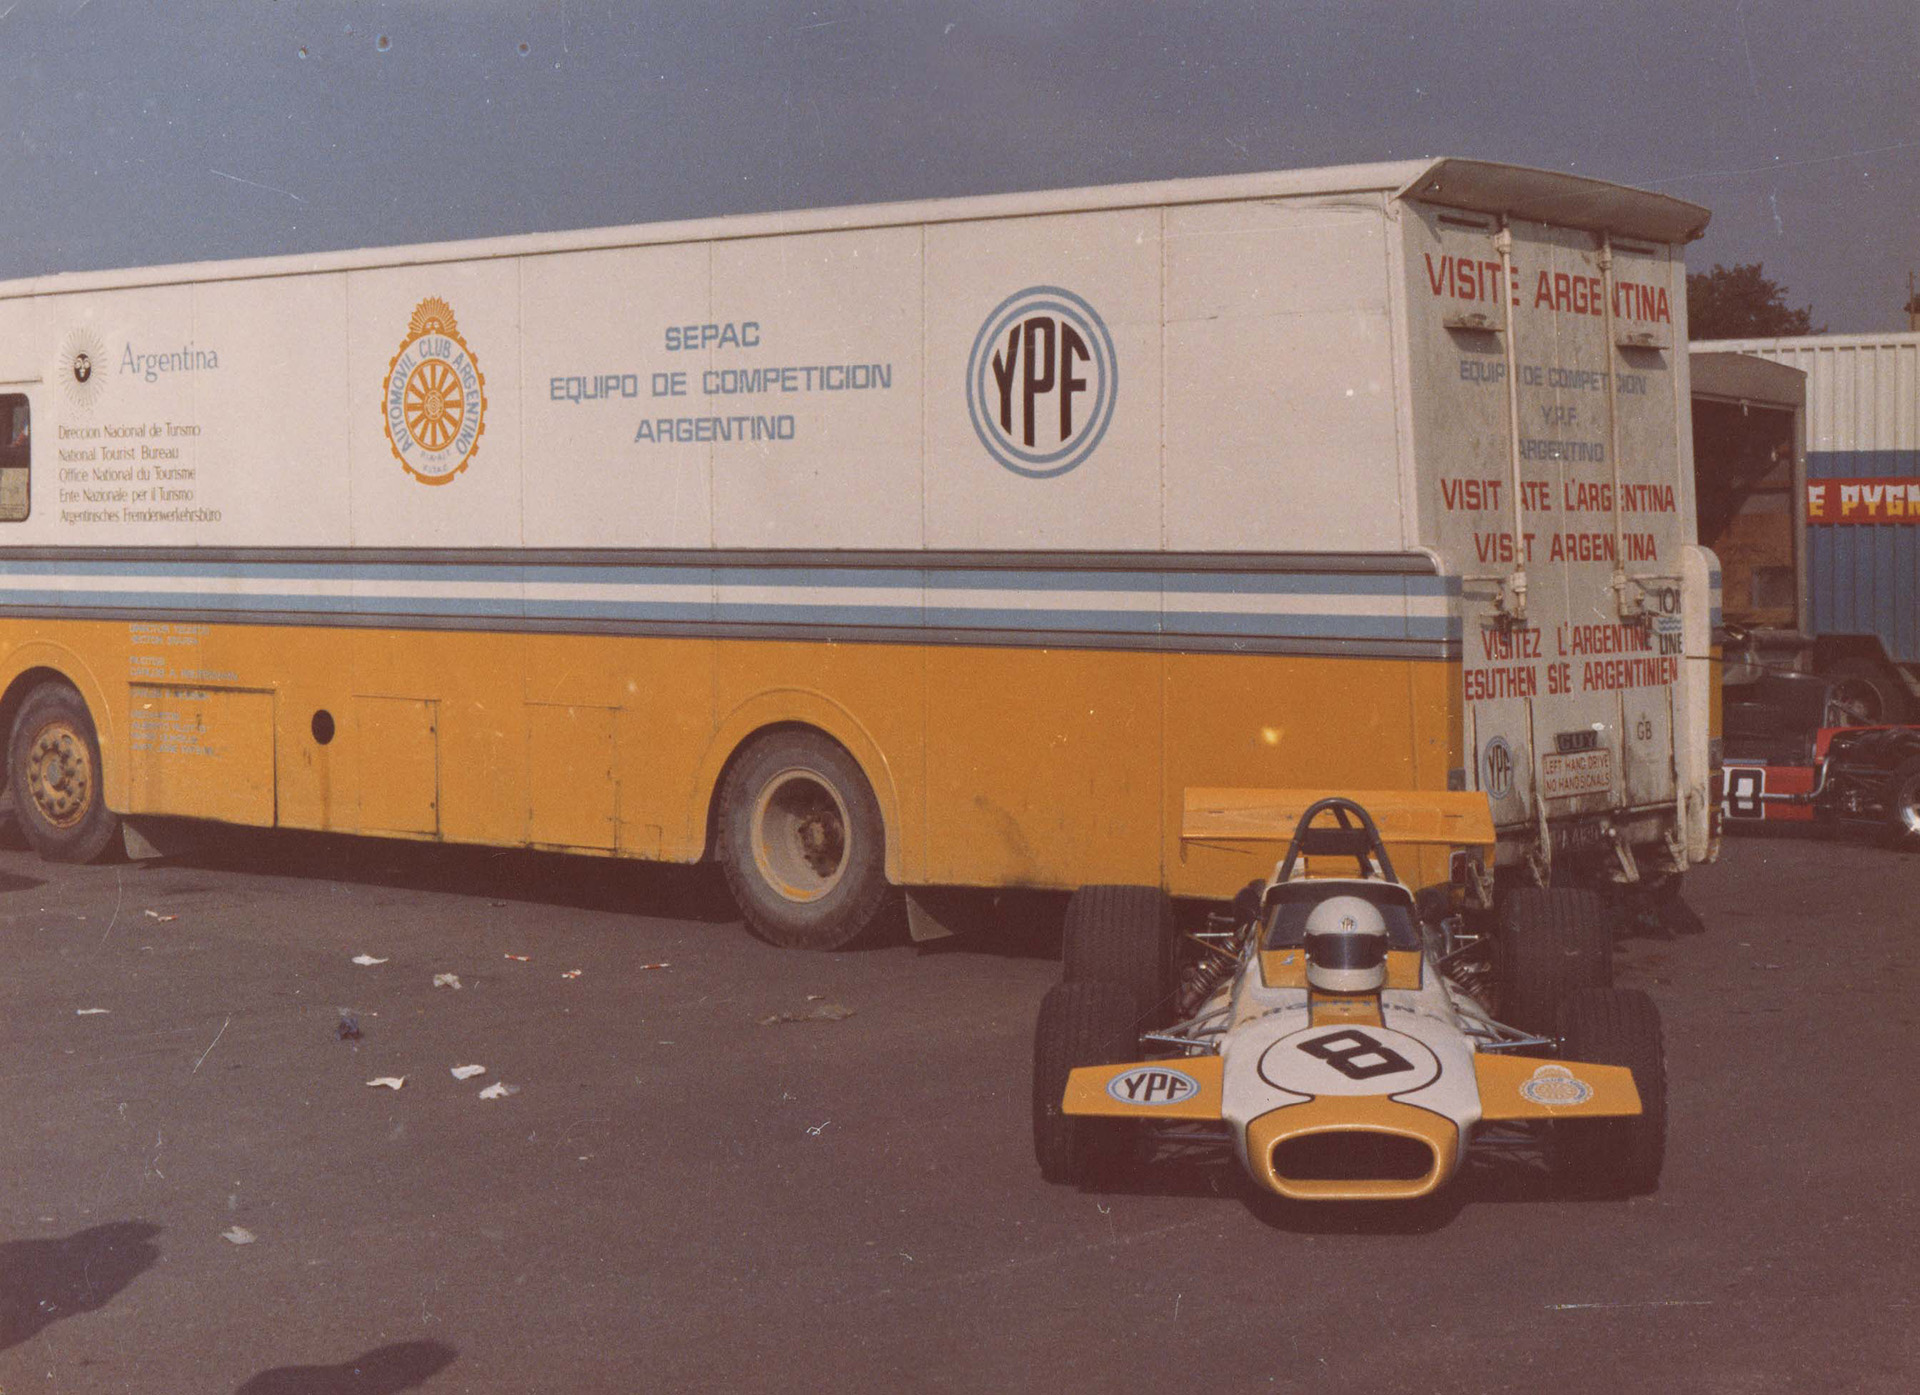 El camión del equipo ACA-SEPAC y uno de los Brabham BT 30. Nótese el "visite Argentina" en cinco idiomas: español, italiano, inglés, francés y alemán (Prensa ACA).